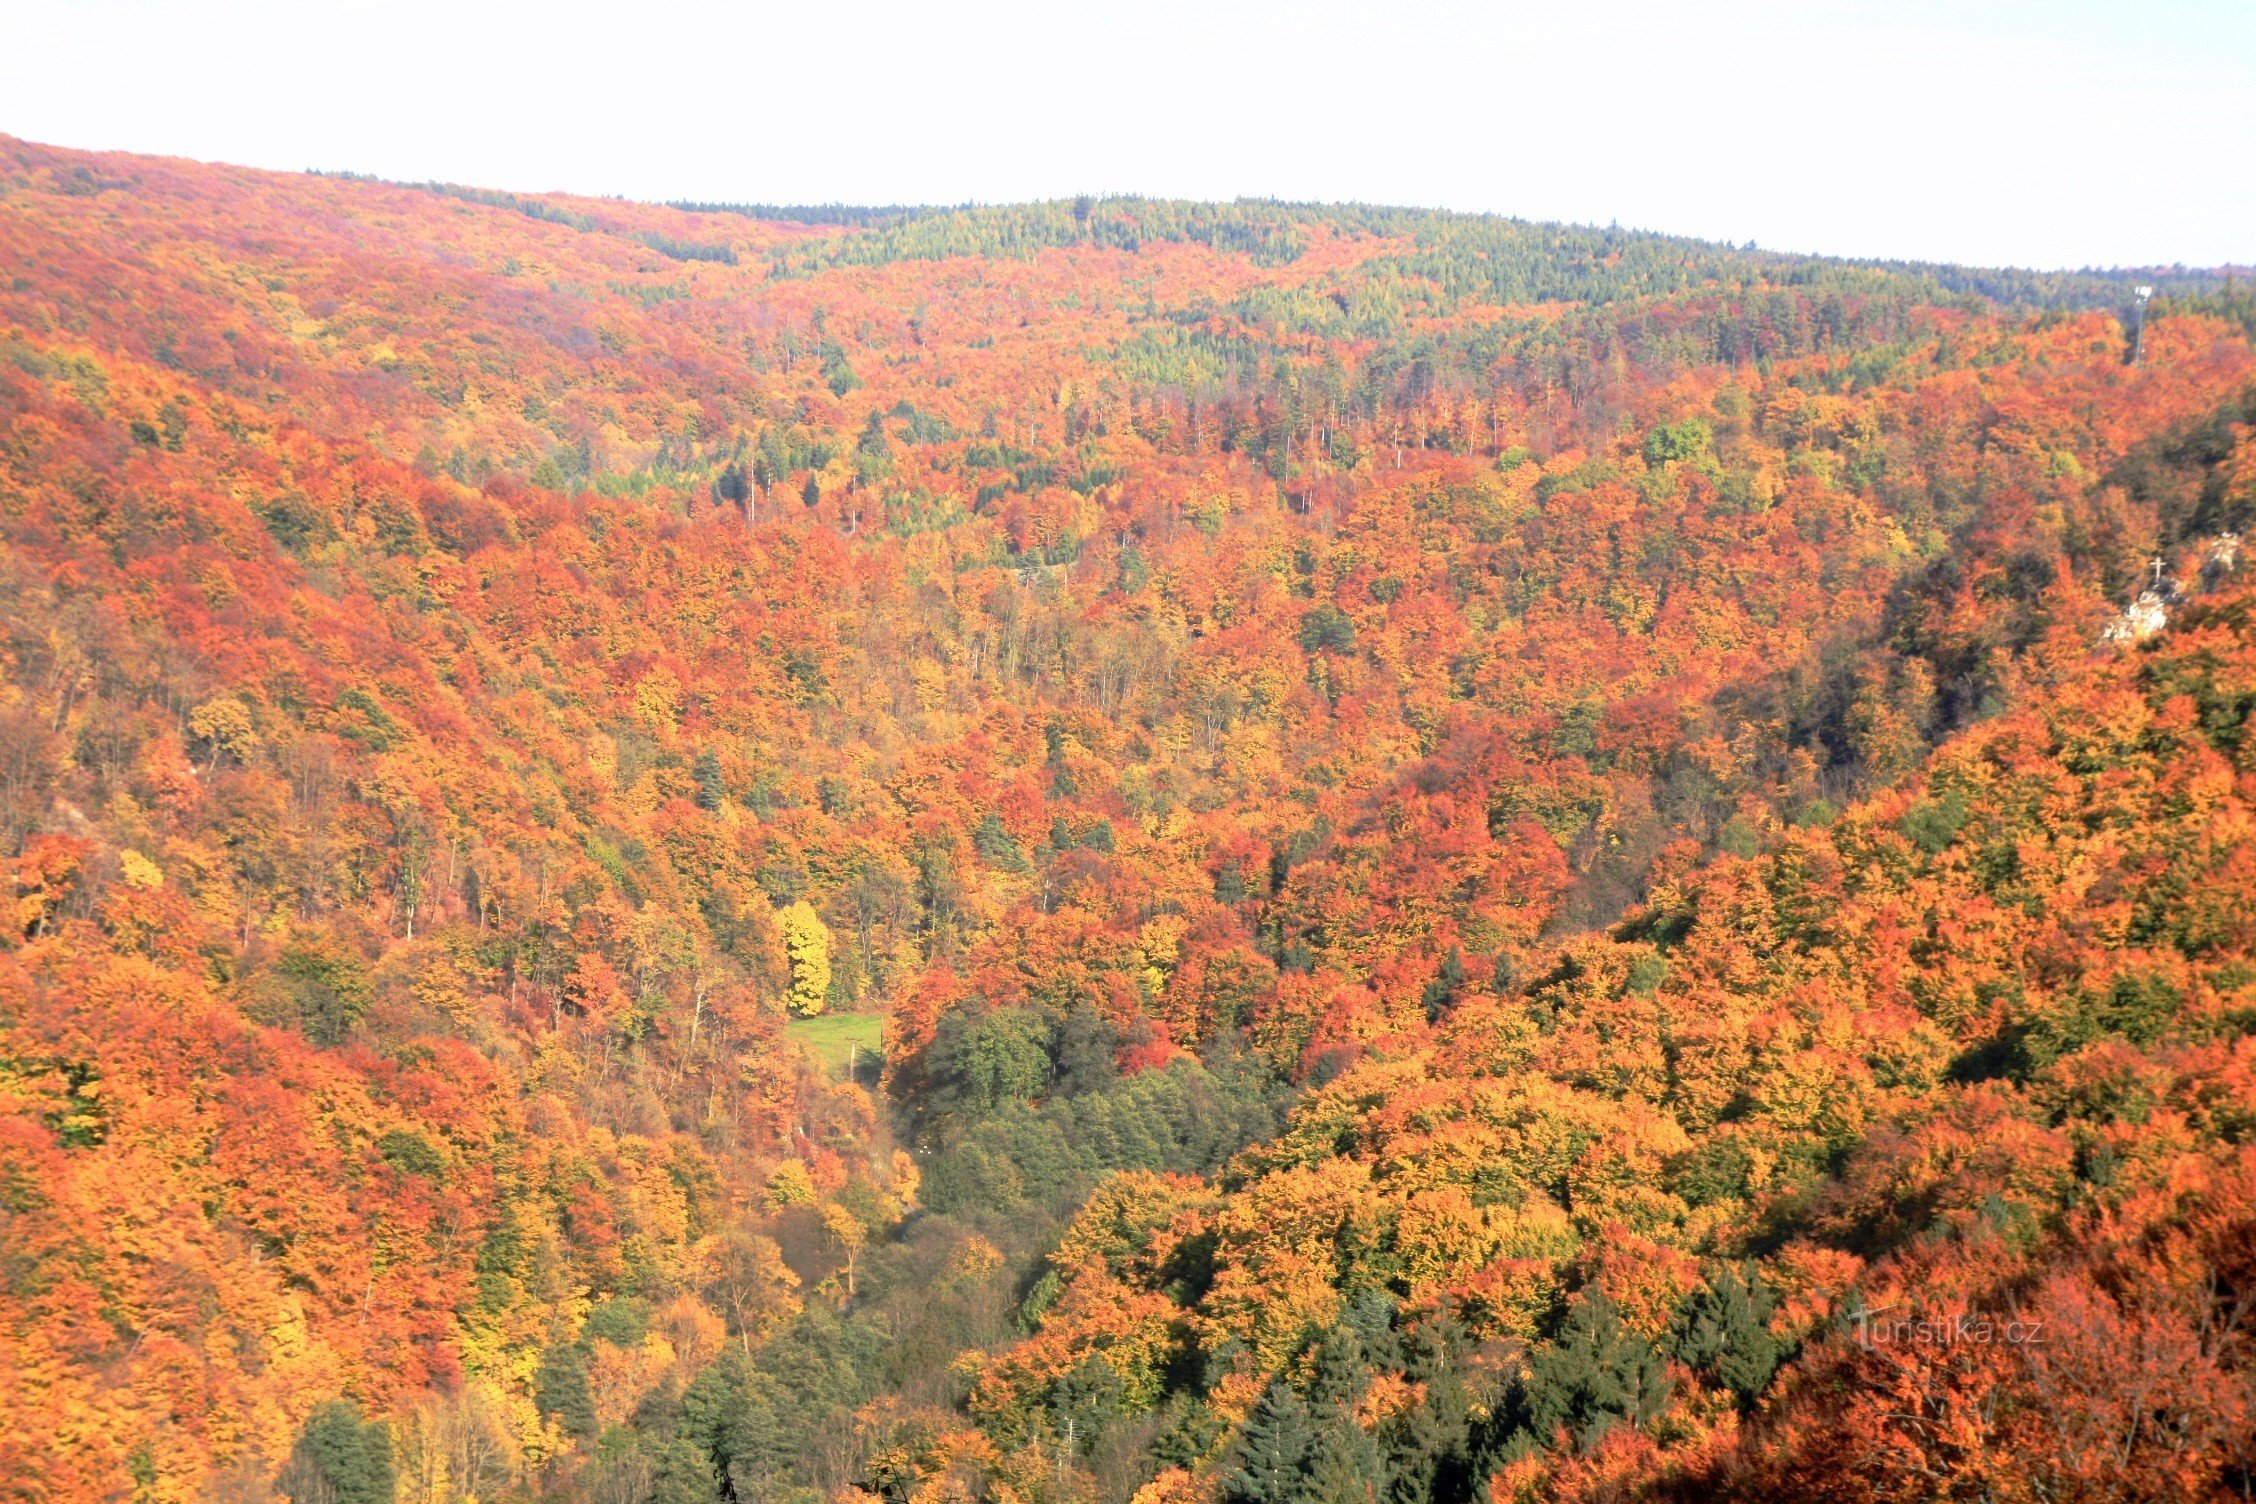 View of Křtinské údolí in the vicinity of Býčí skála